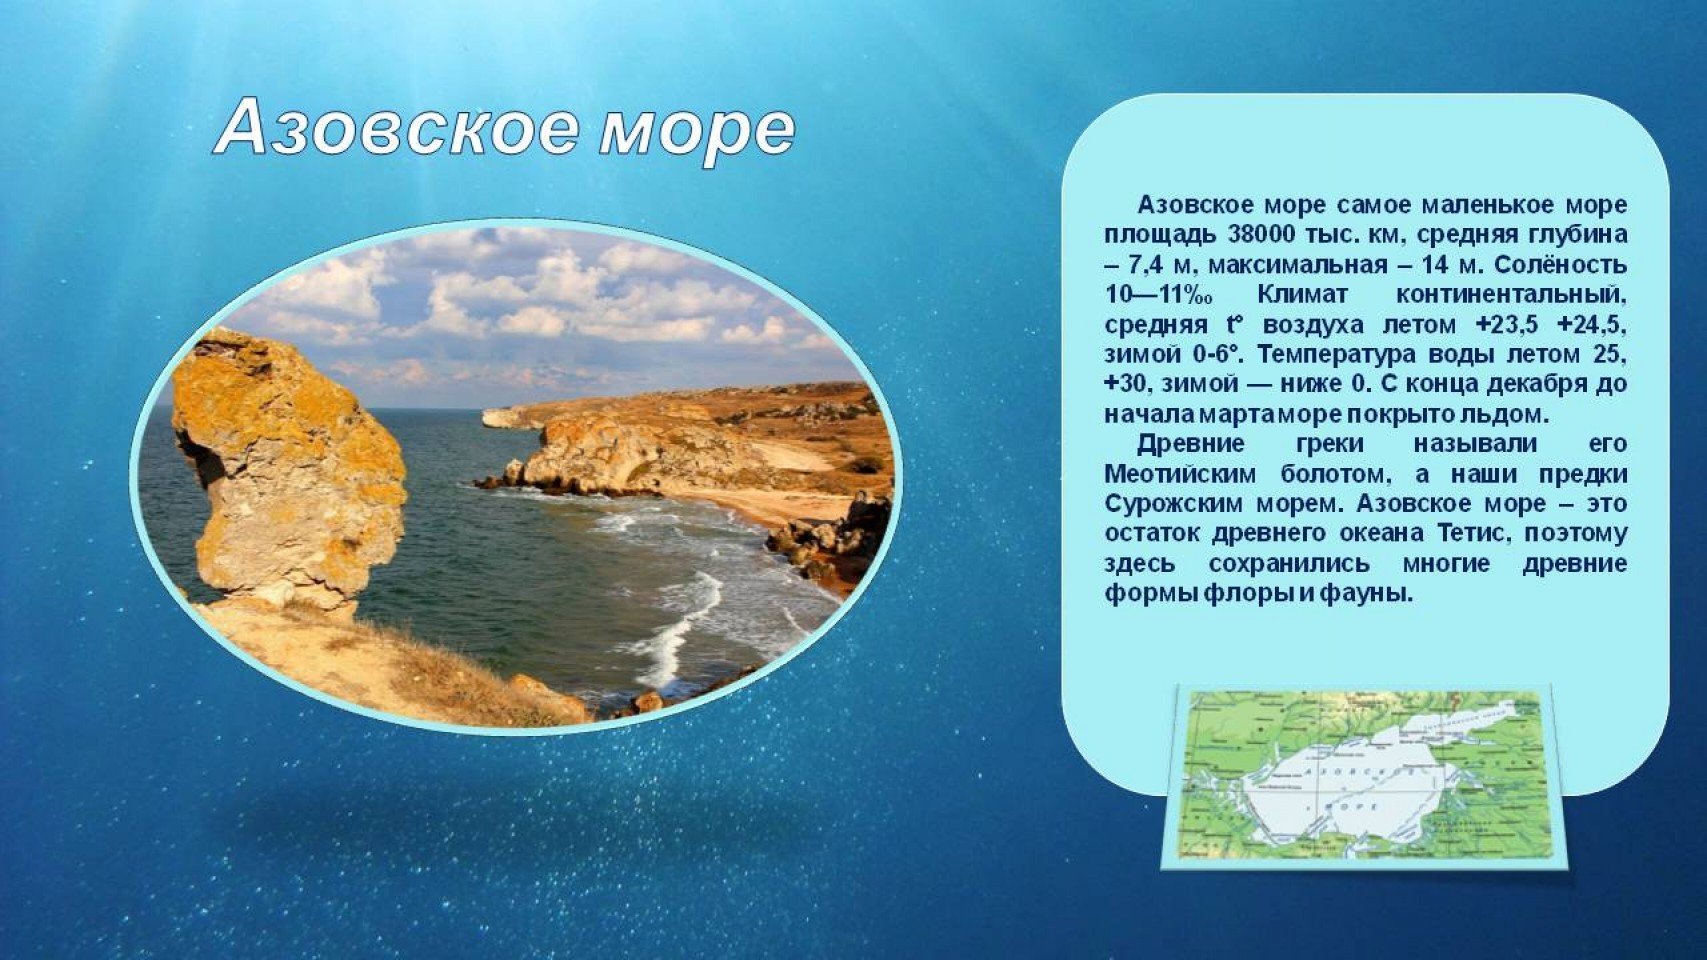 Глубина азовского средняя и максимальная. Самое маленькое море Азовское. Азовское море соленость воды. Азовское море самое мелкое. Самое маленькое море в мире.